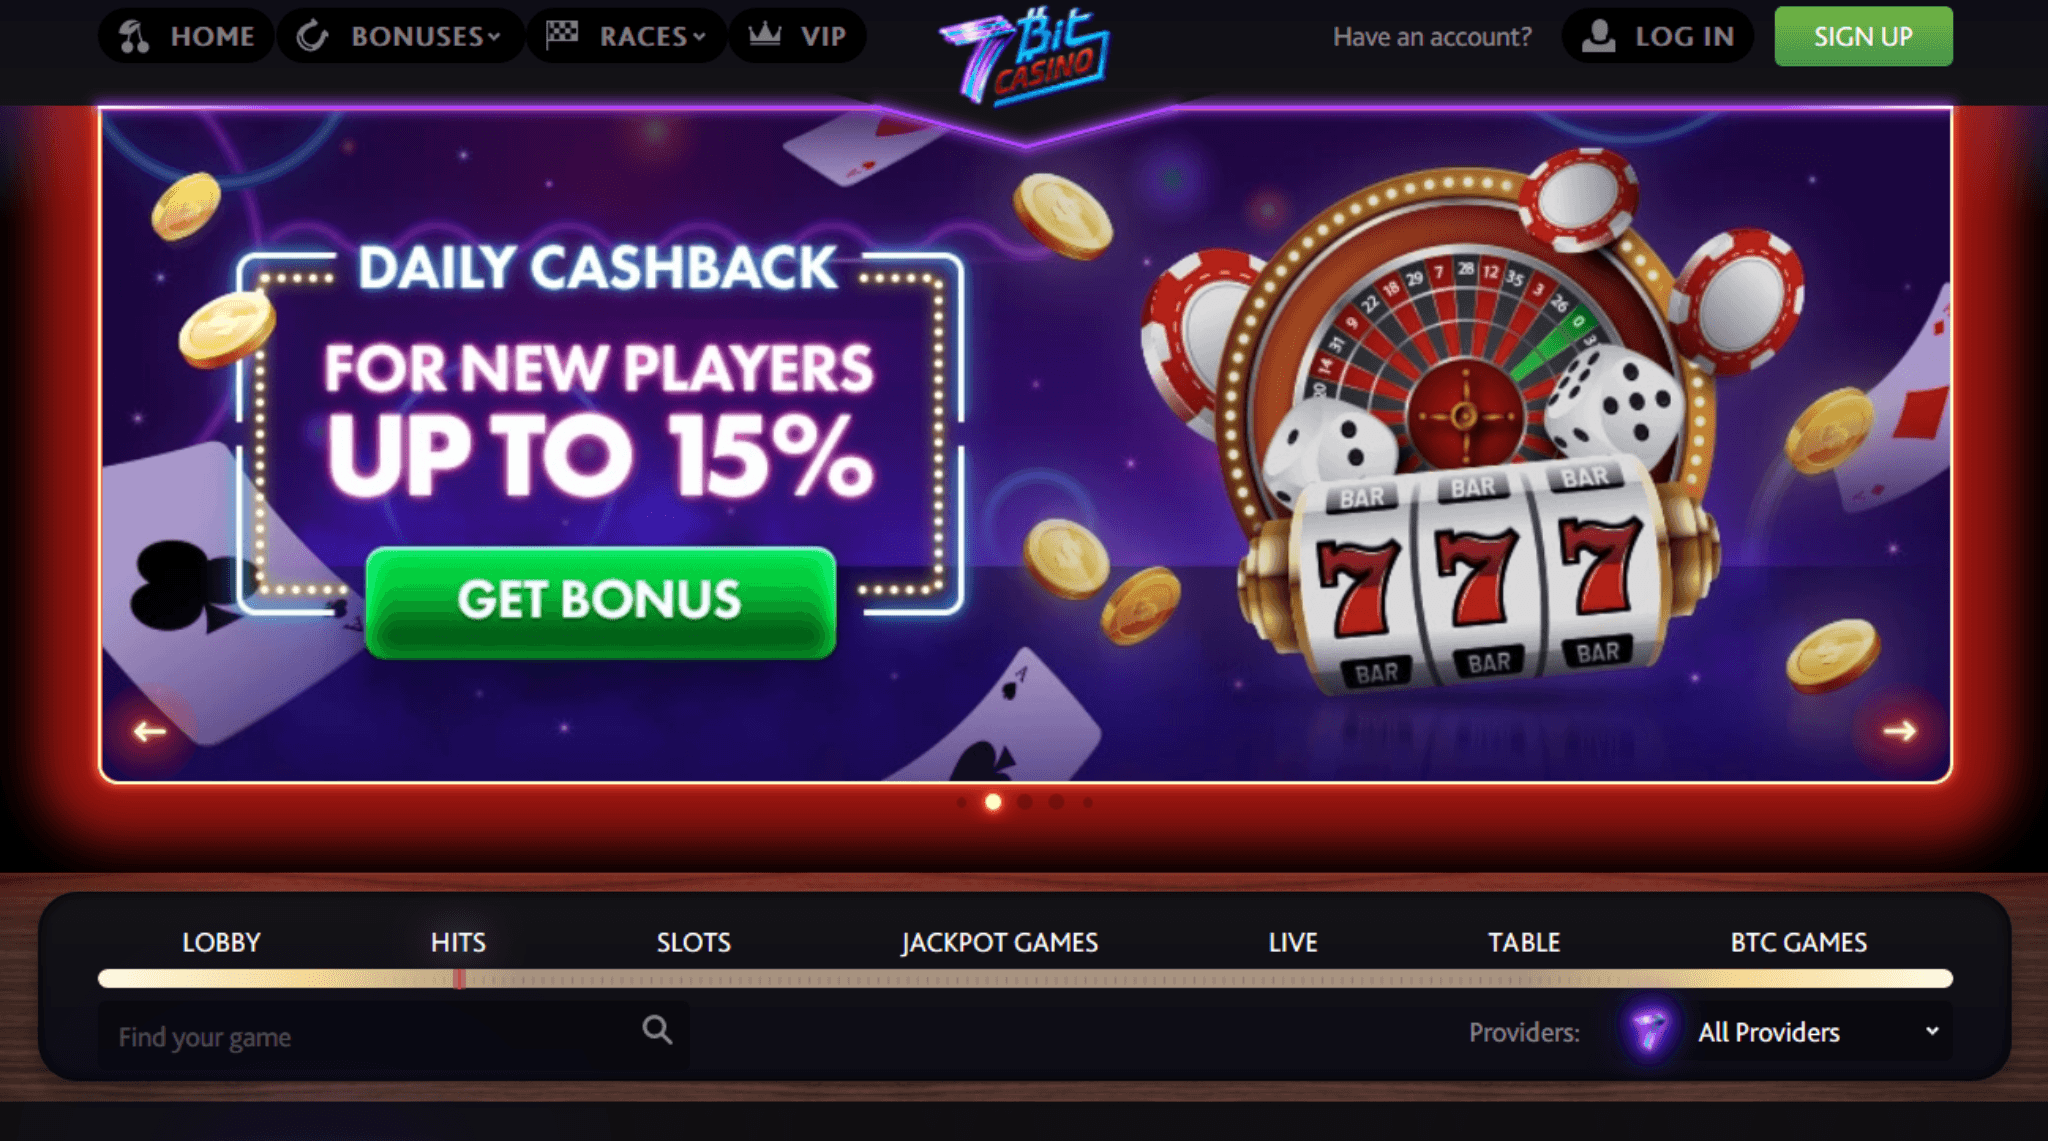 7bitcasino casino промокод моментальные лотереи в столото